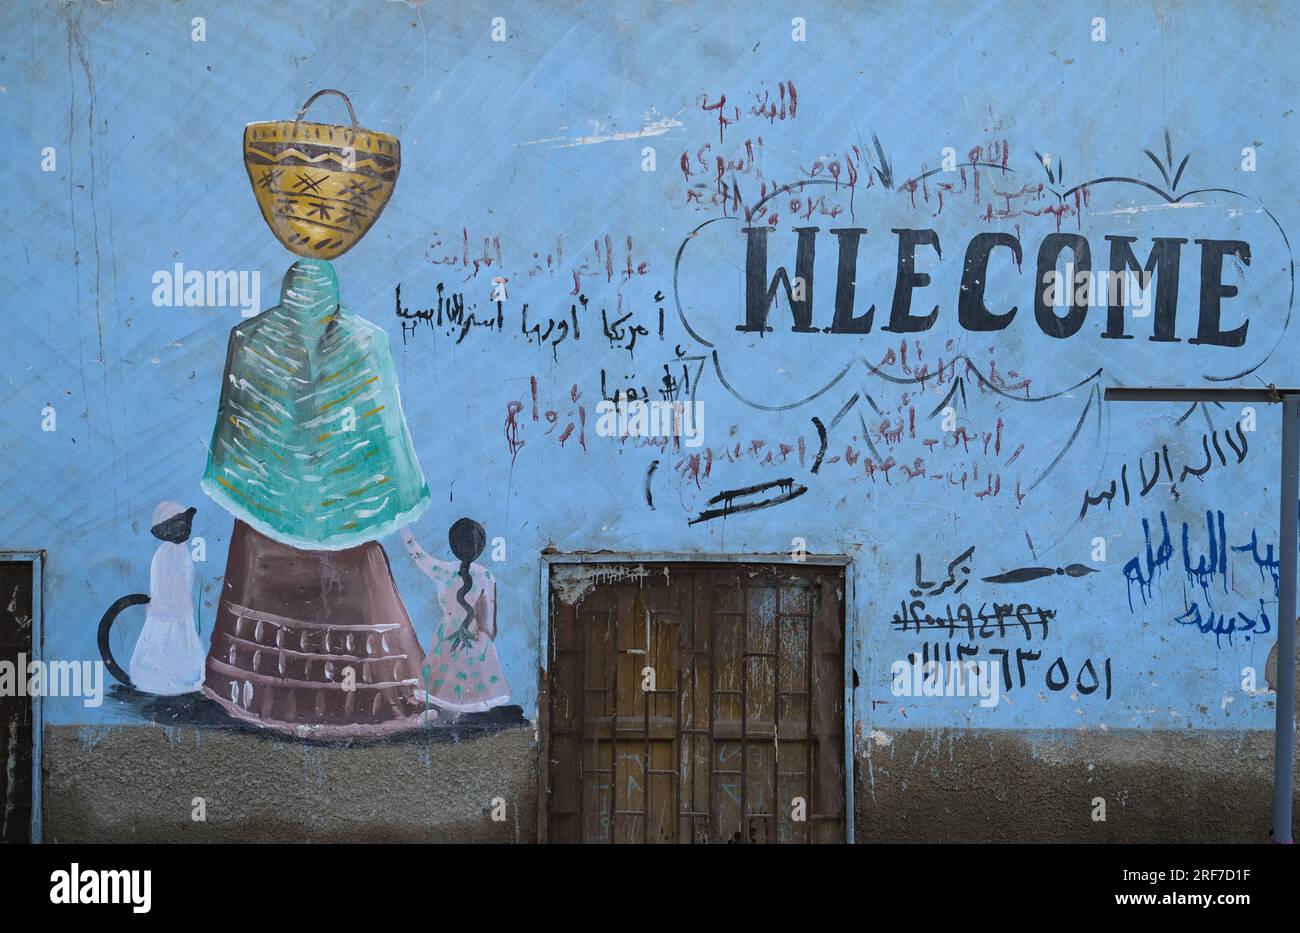 Bemalte Hauswand, Wohnhaus, Schreibfehler, fenglisch, nubisches Dorf, Nilinsel Elephantine, Assuan, Ägitten Banque D'Images